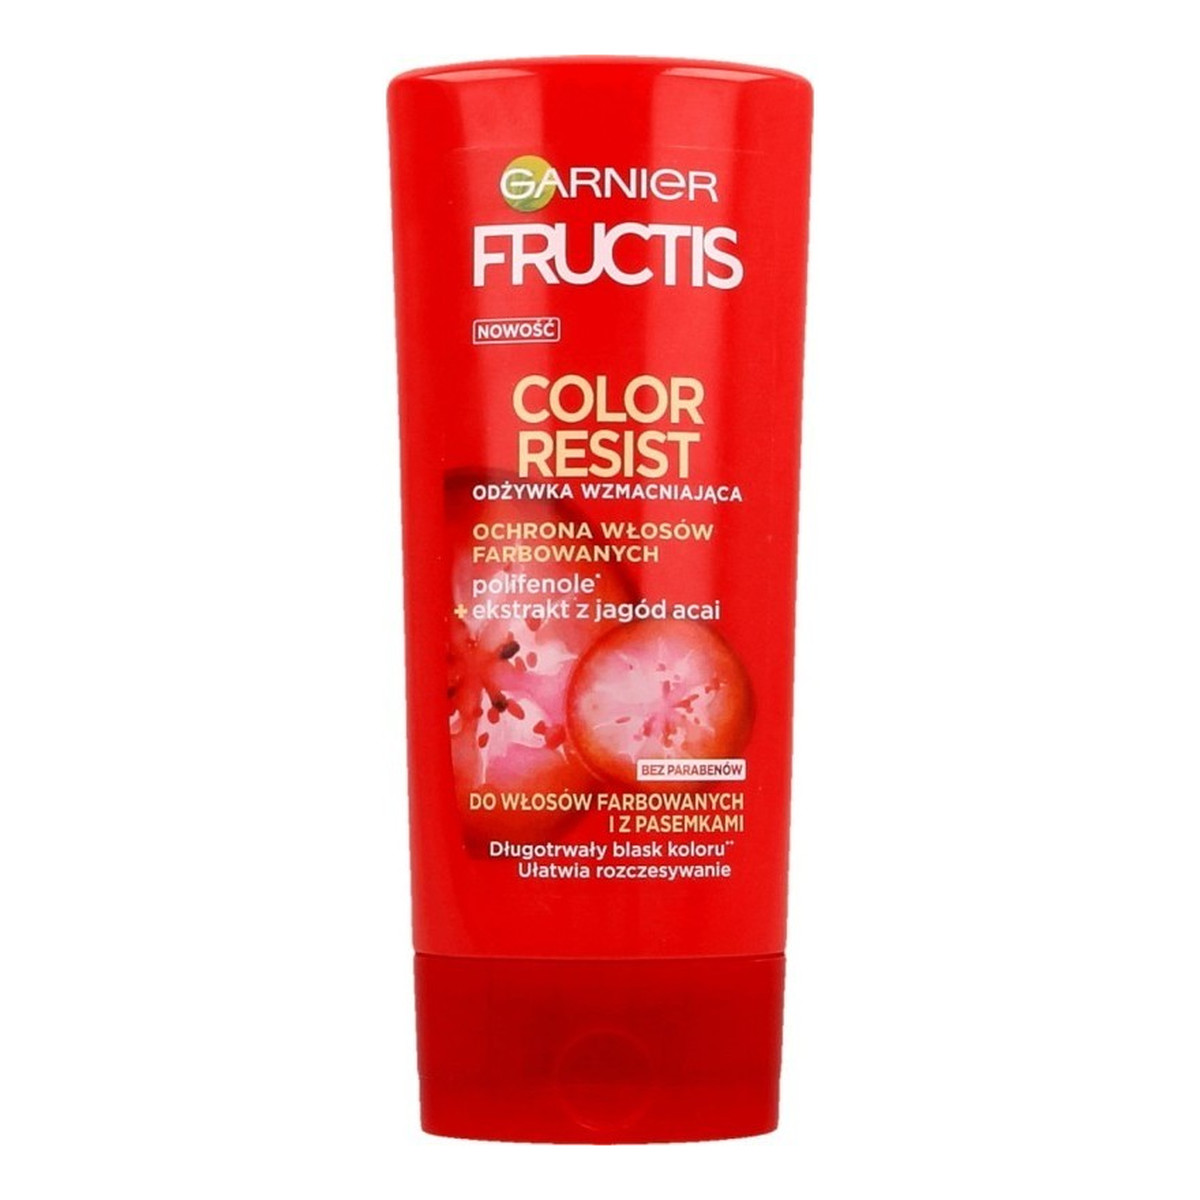 Garnier Fructis Color Resist odżywka do włosów ochraniająca kolor 200ml